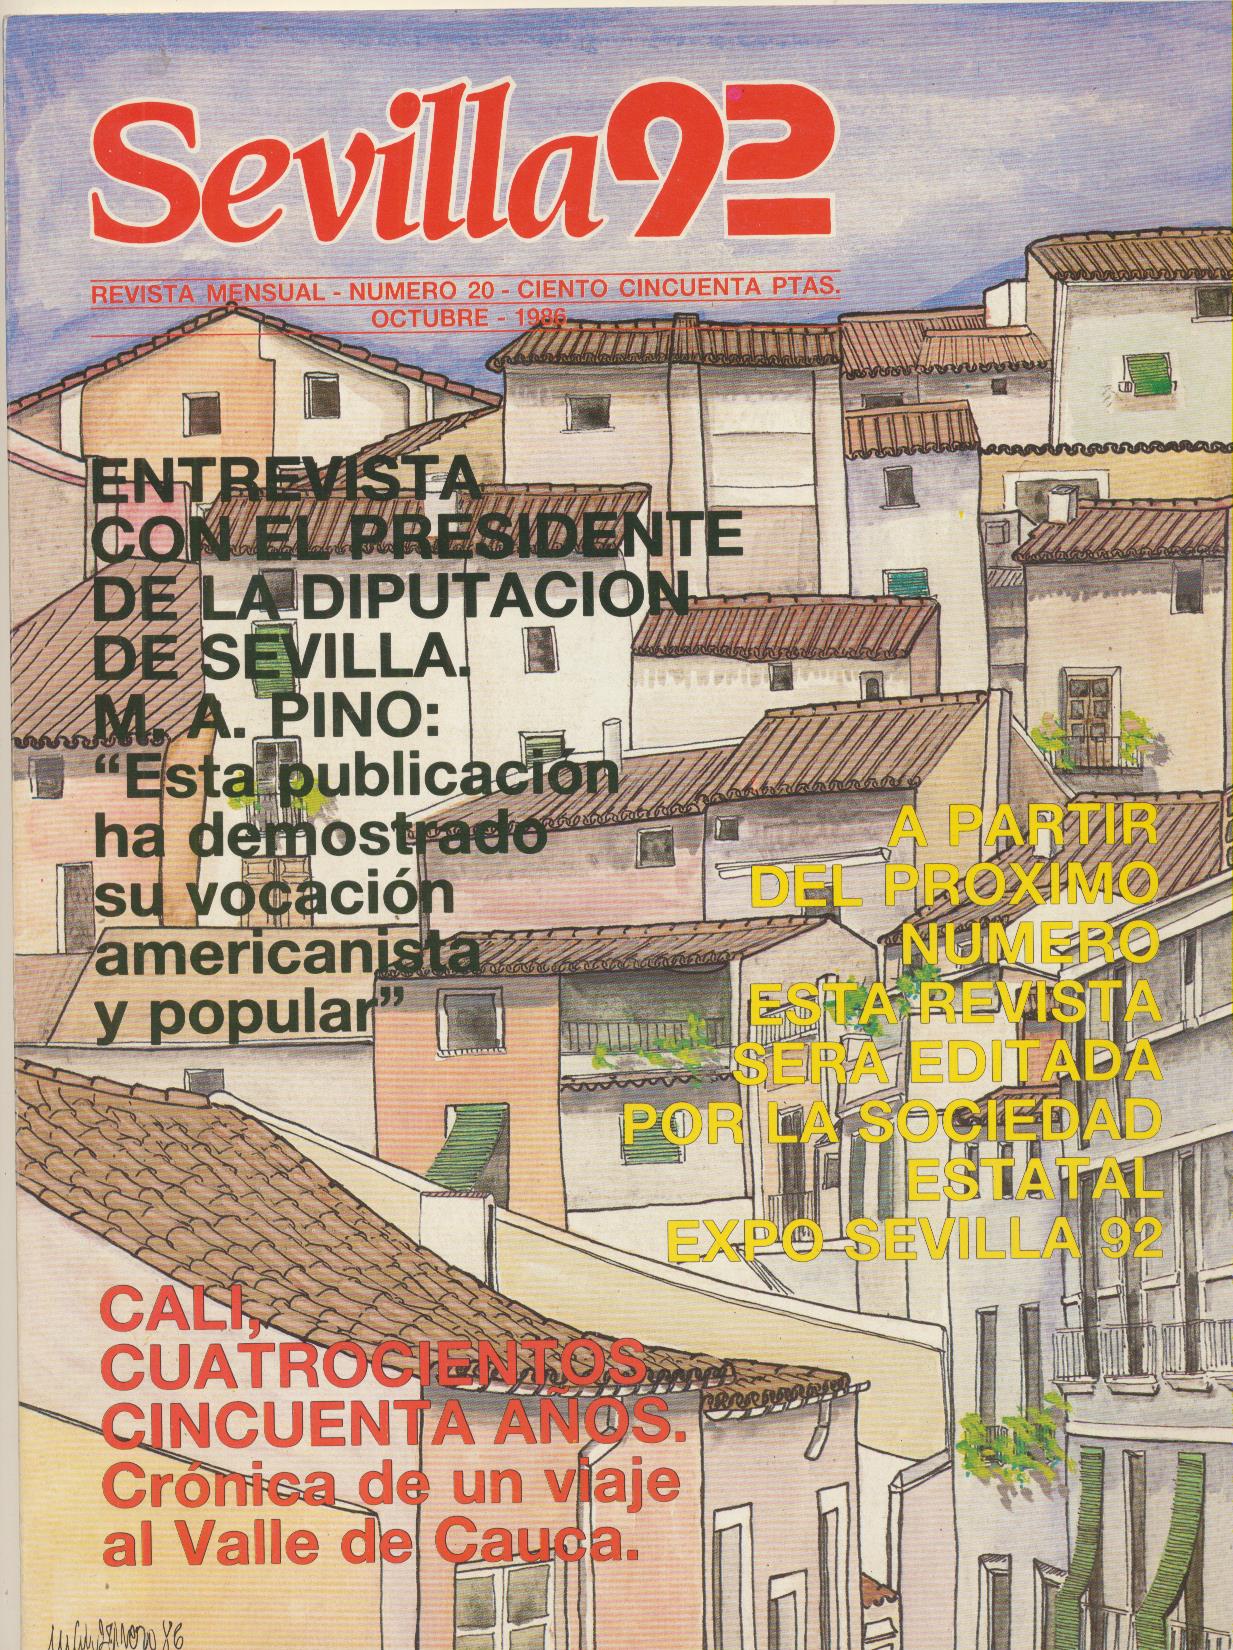 Sevilla 92. nº 20. Octubre 1986